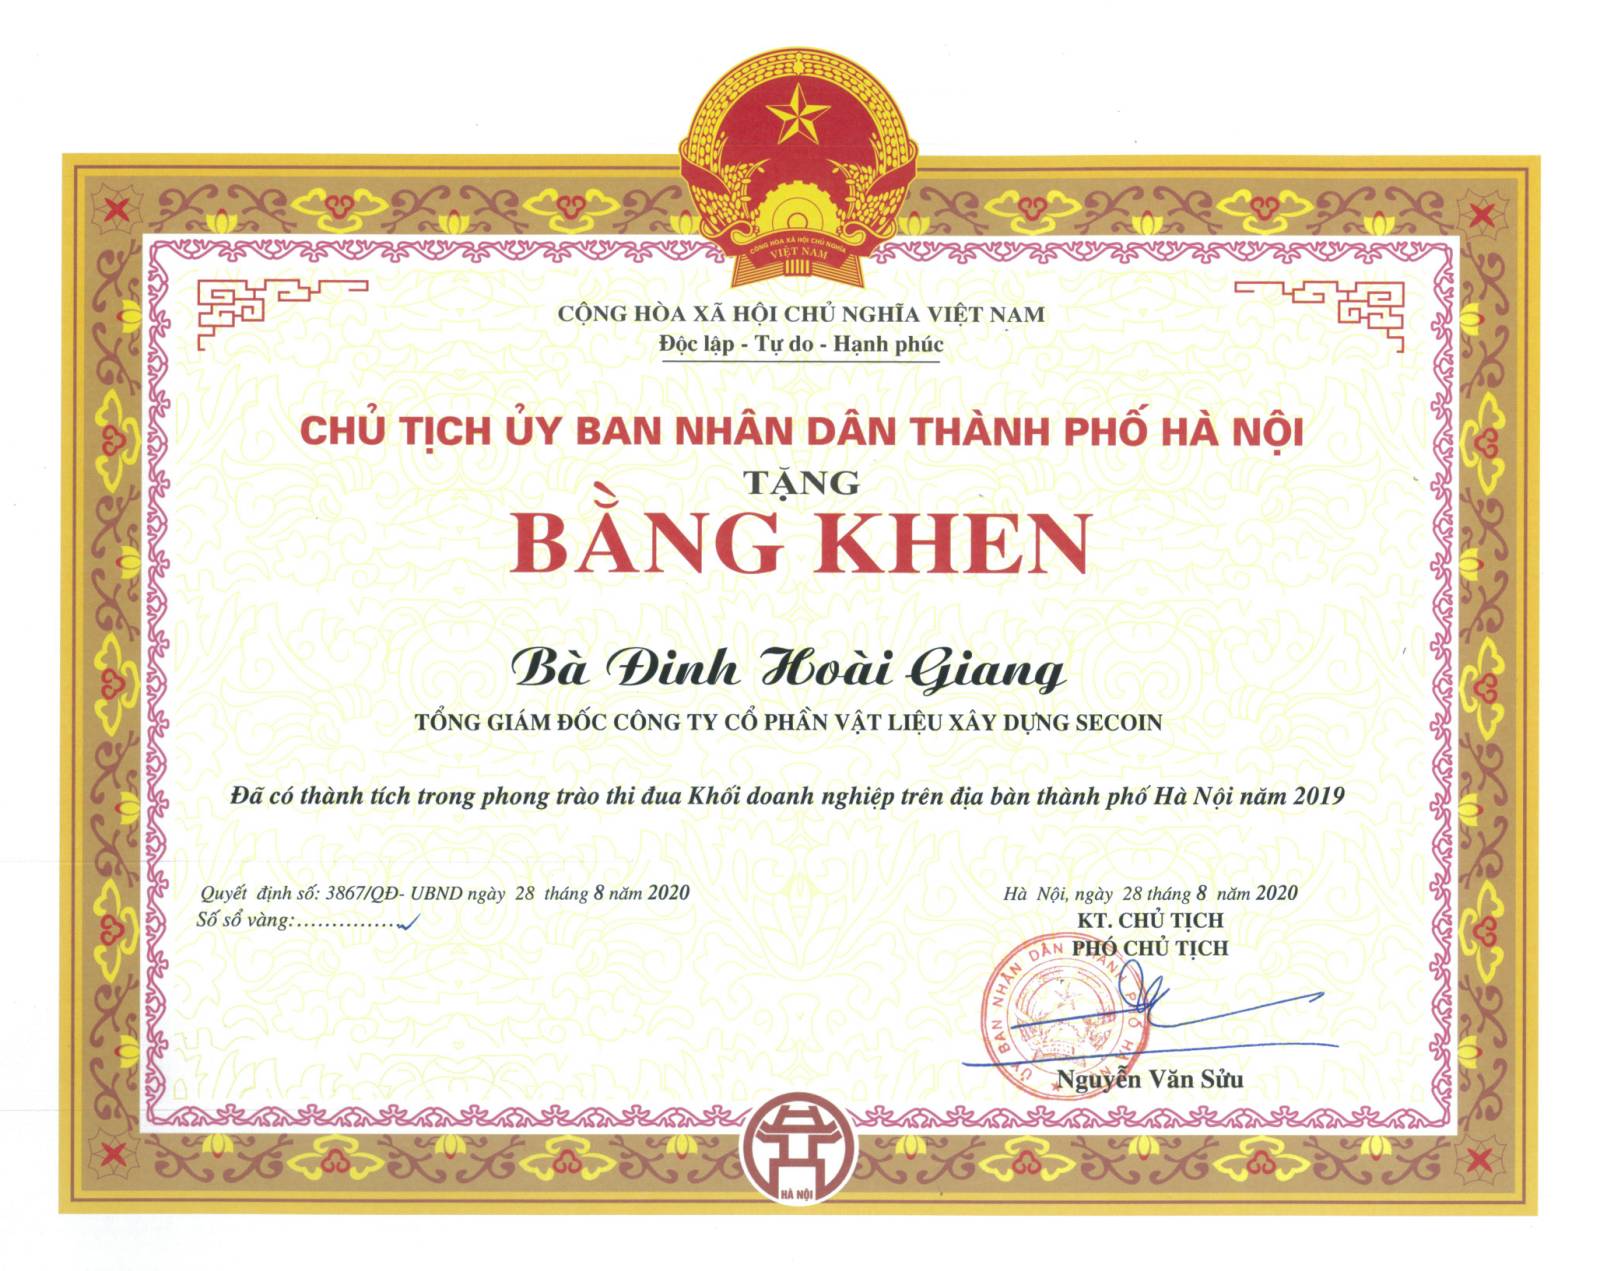 Chúc mừng Bà Đinh Hoài Giang nhận được bằng khen từ UBND TP.Hà Nội